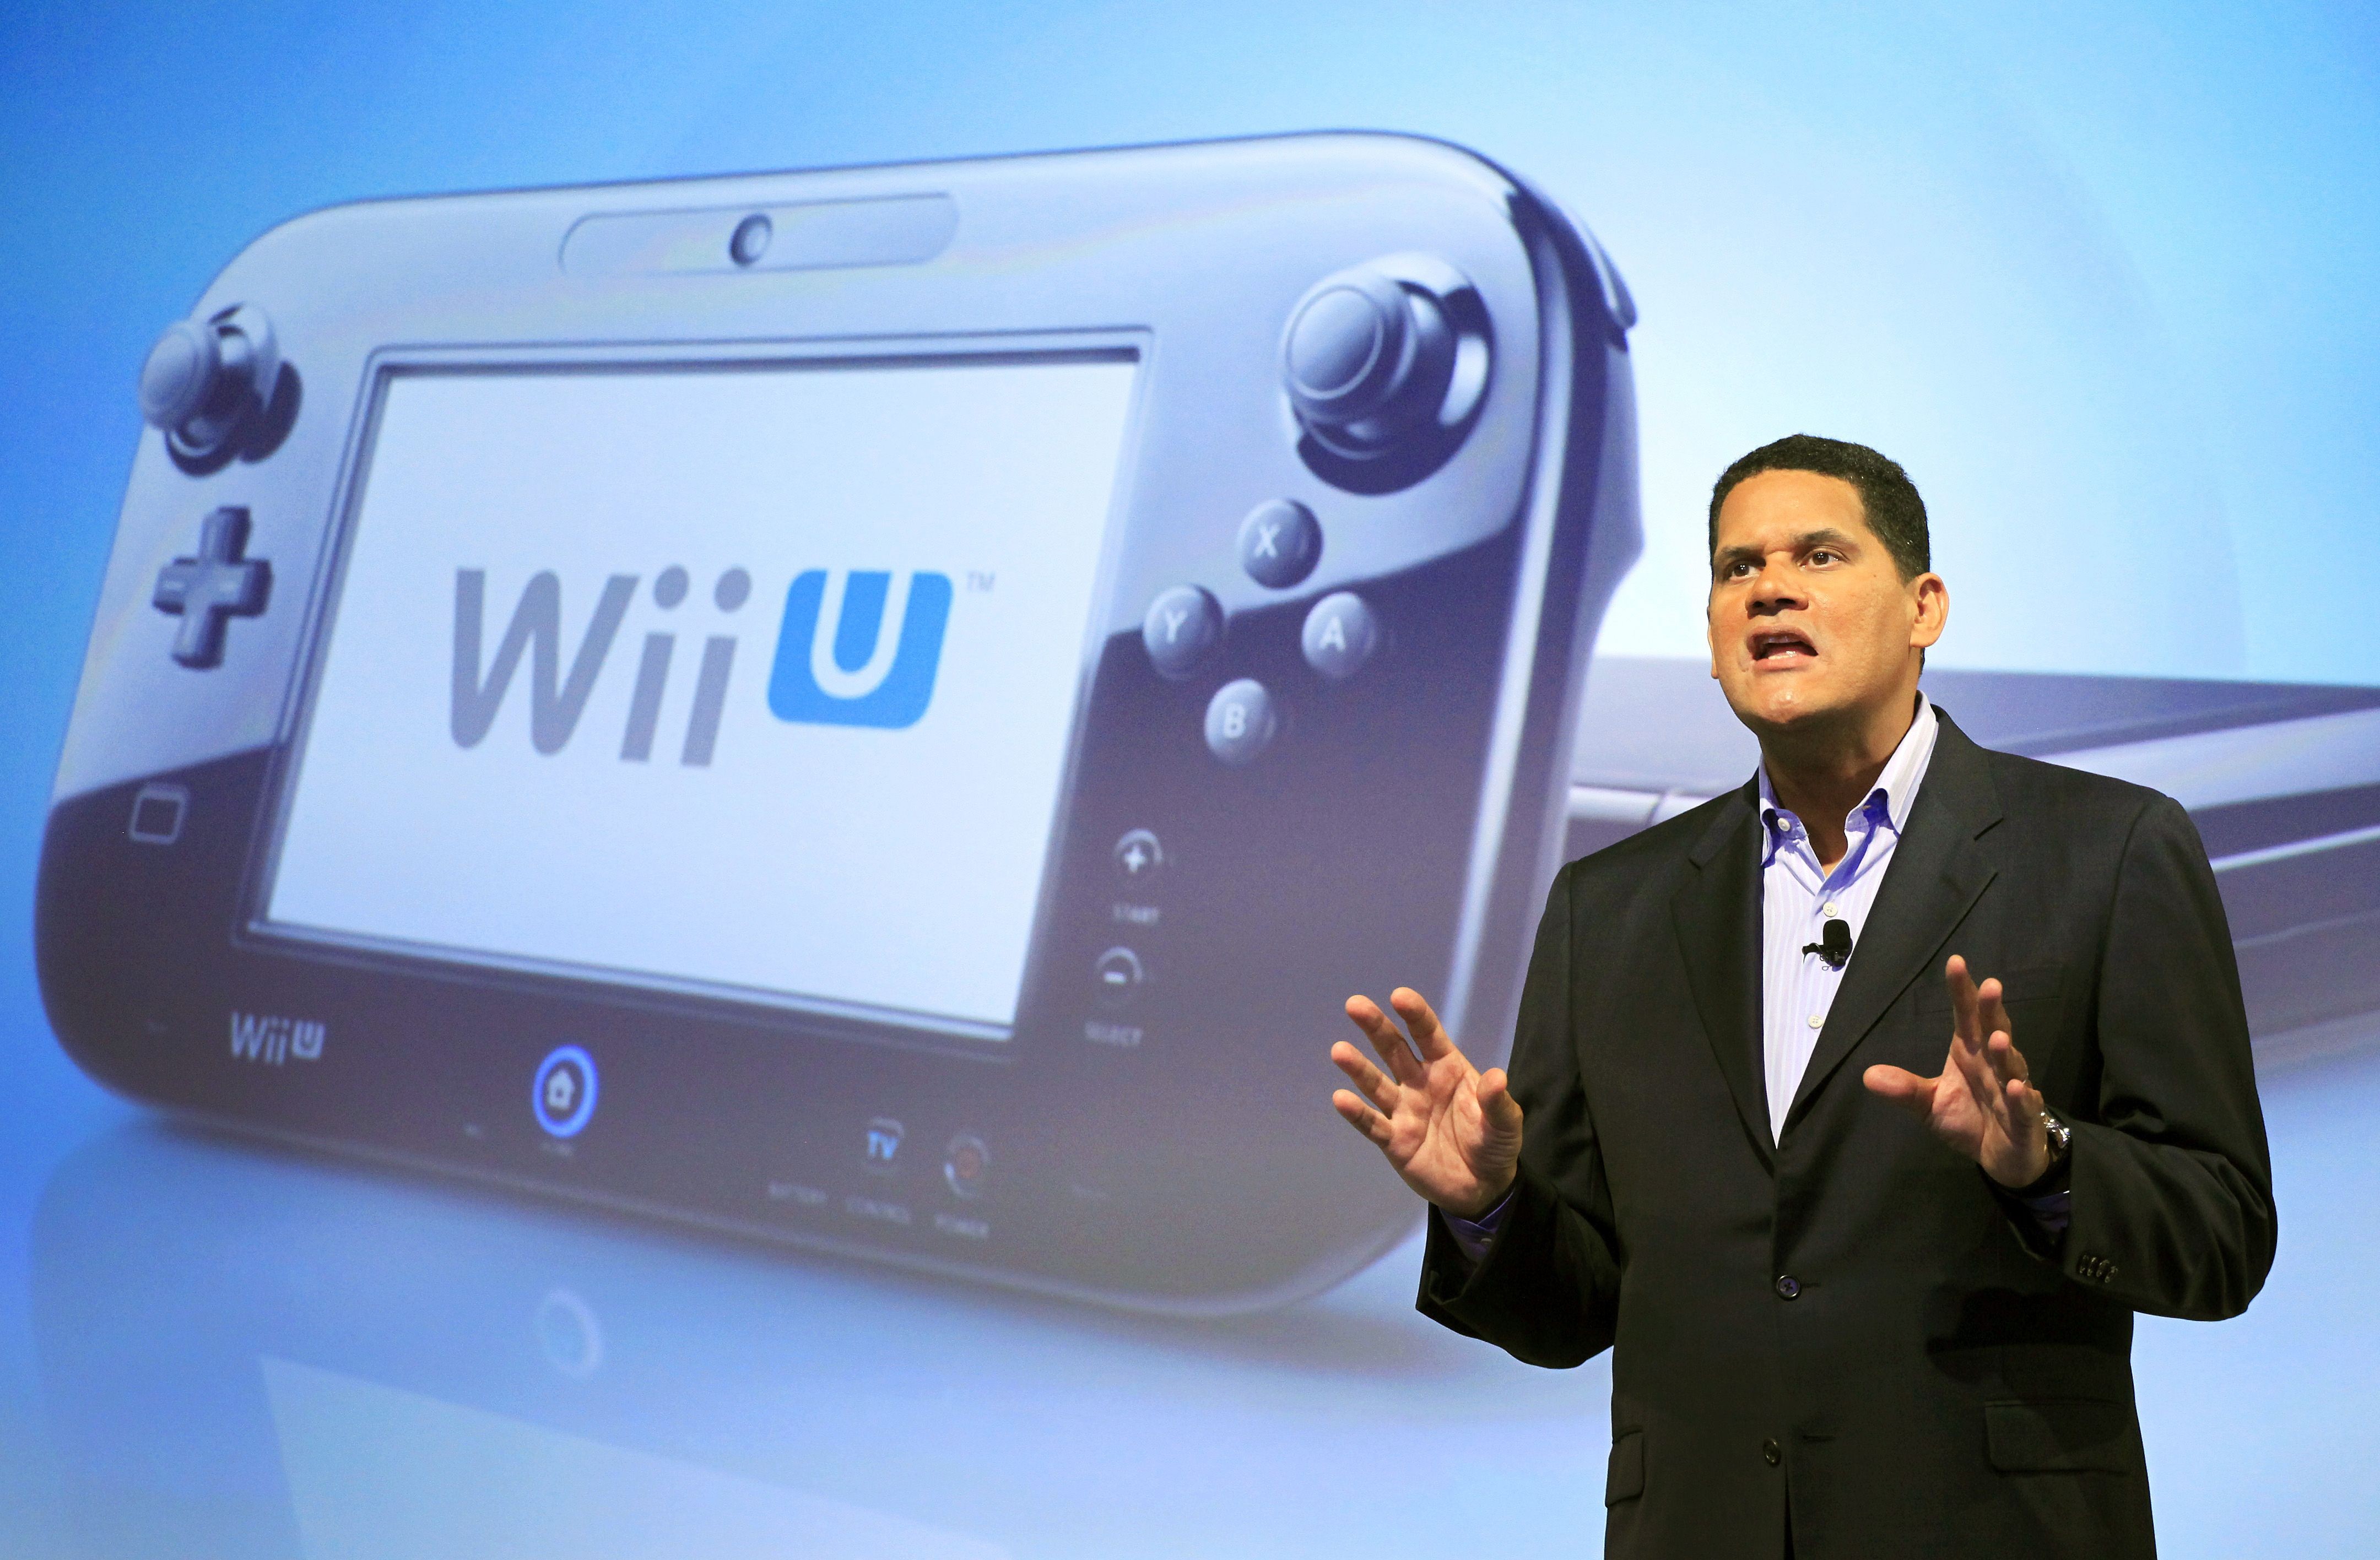 Lancement Wii U aux USA - Chronique d'un foirage annoncé